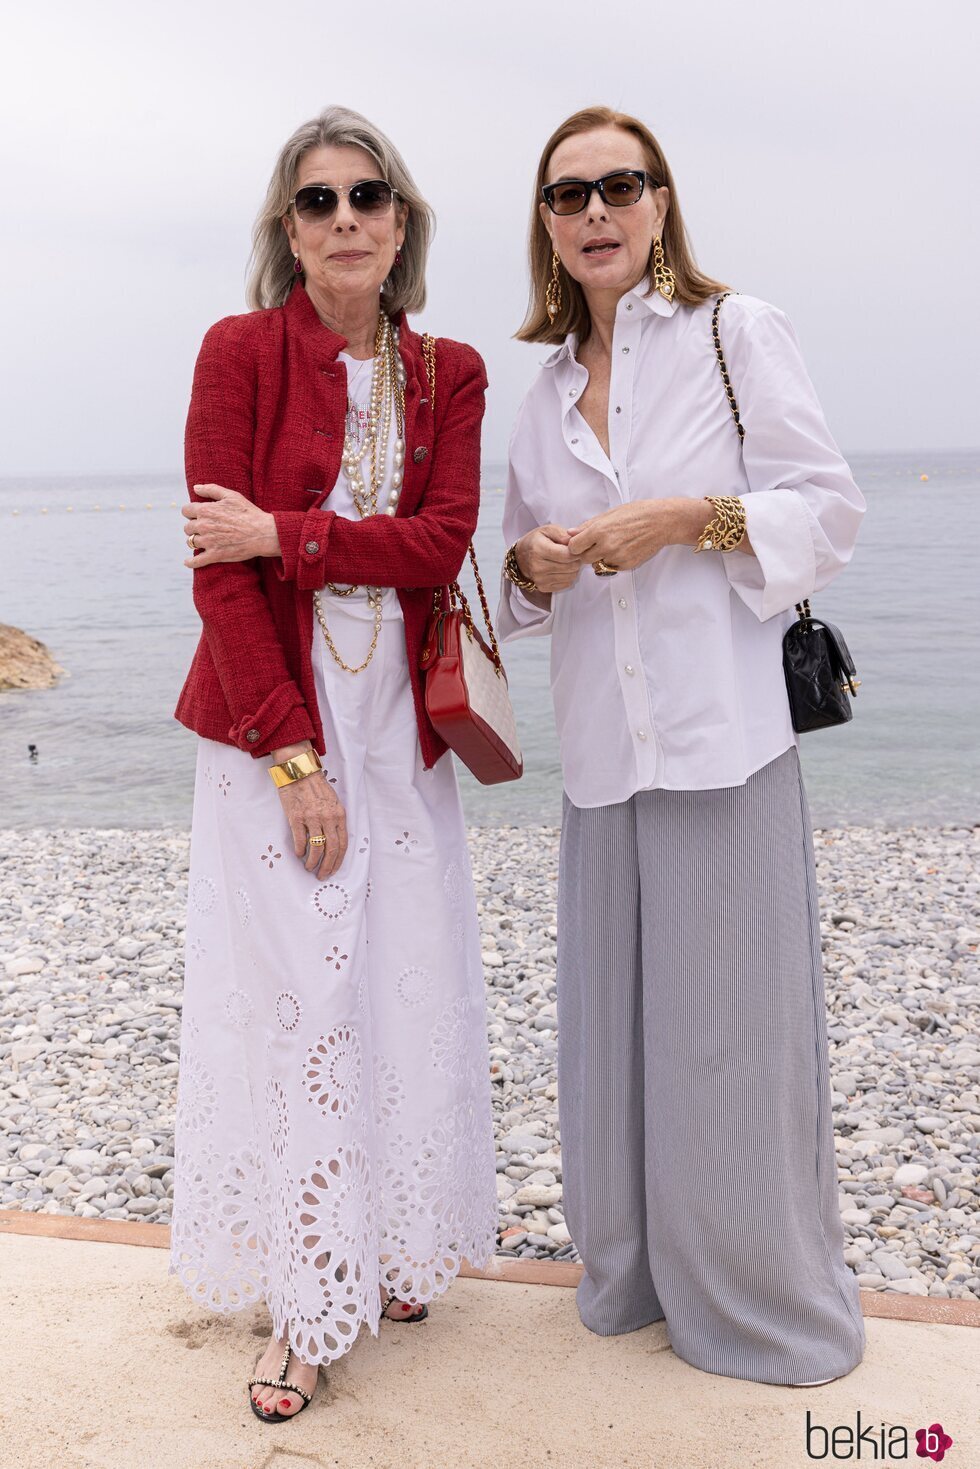 Carolina de Mónaco y Carole Bouquet en la presentación de la colección Crucero 2022/2023 de Chanel